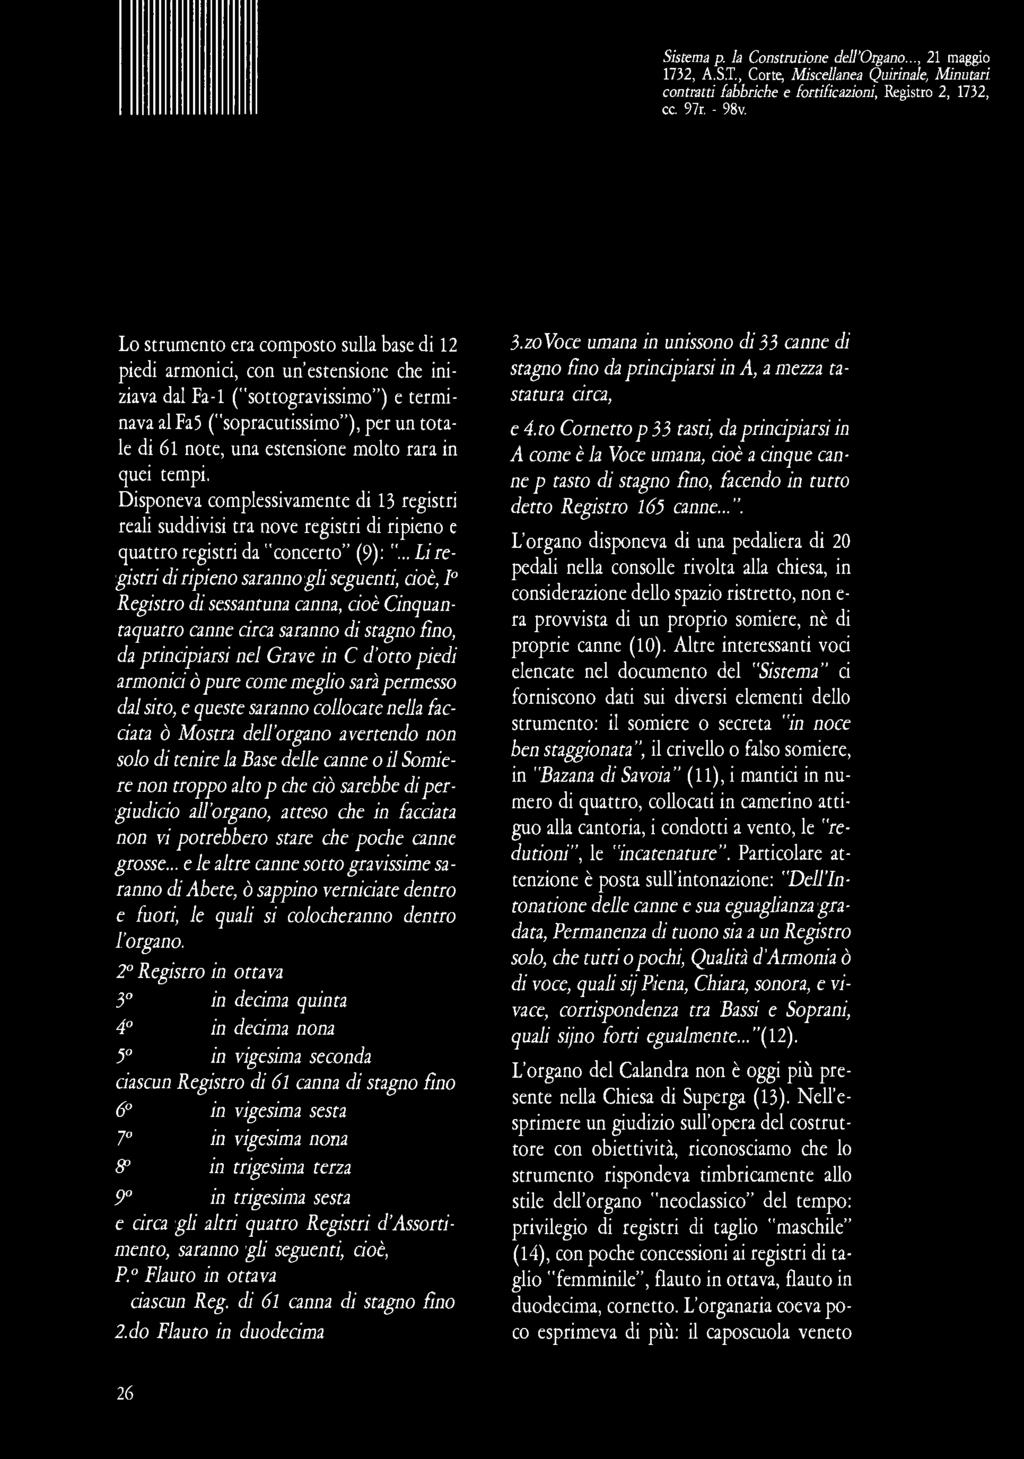 Sistema p. la Construtione dell'organo..., 21 maggio 1732, A.S.T., Corte, Miscellanea Quirinale, Minutari contratti fabbriche e fortificazioni, Registro 2, 1732, cc. 97r. - 98v.